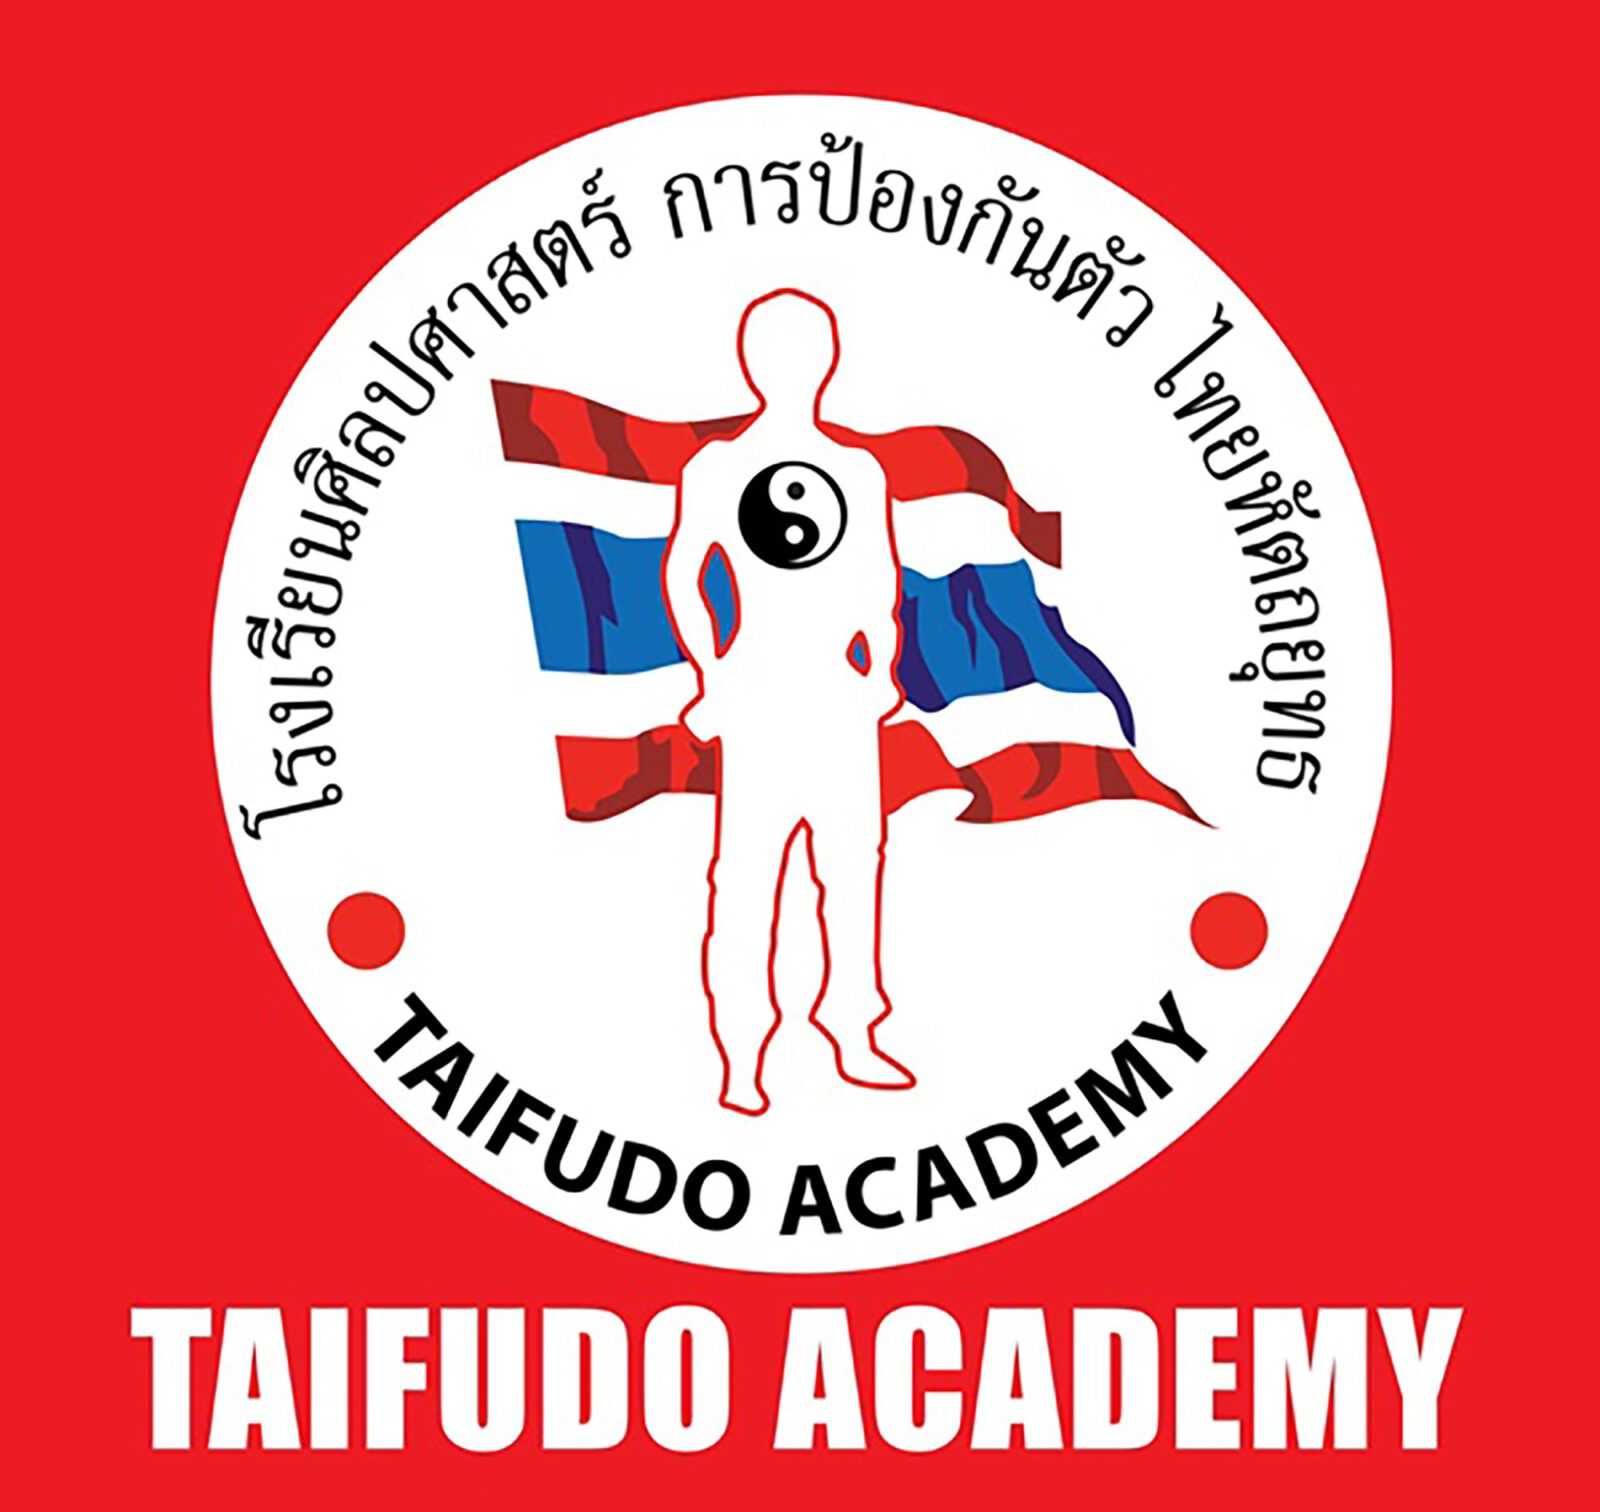 Taifudo Academy